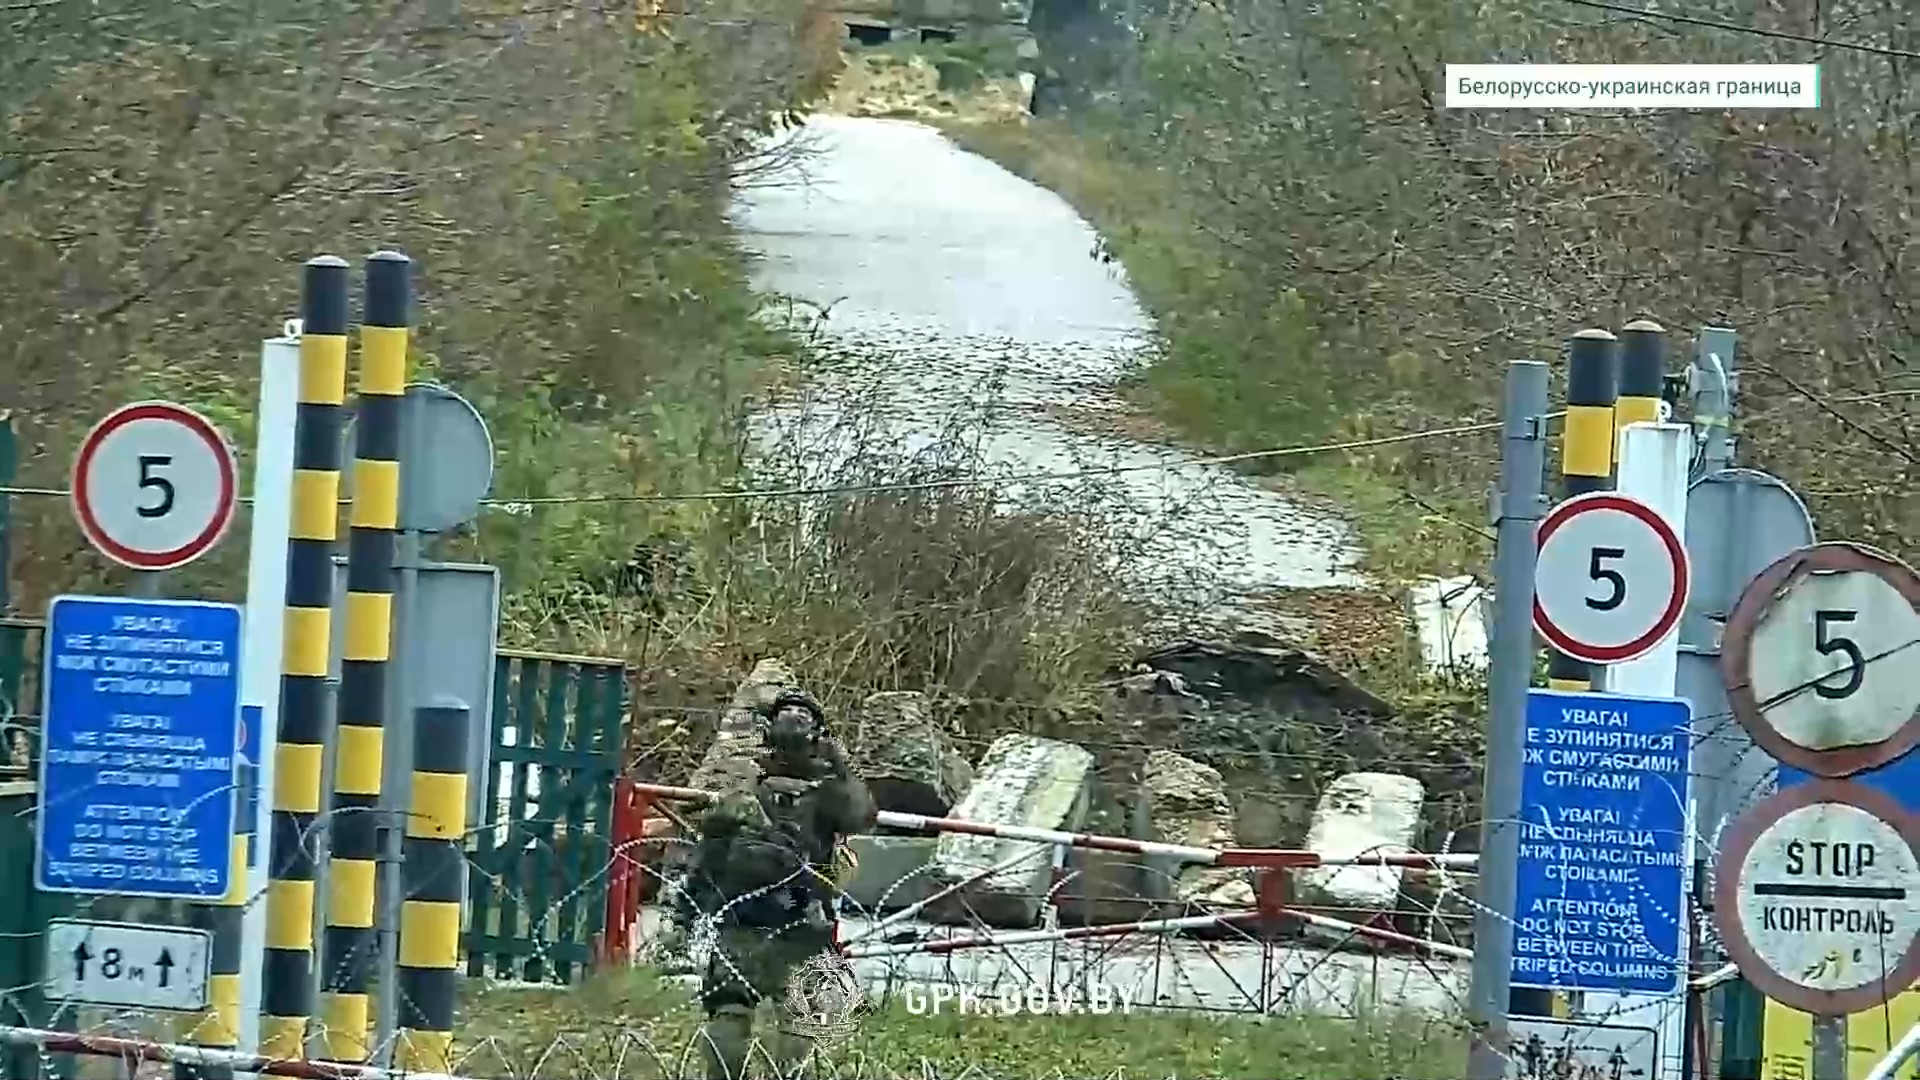 ГПК показал обстановку на границе с Украиной и заявил о провокациях